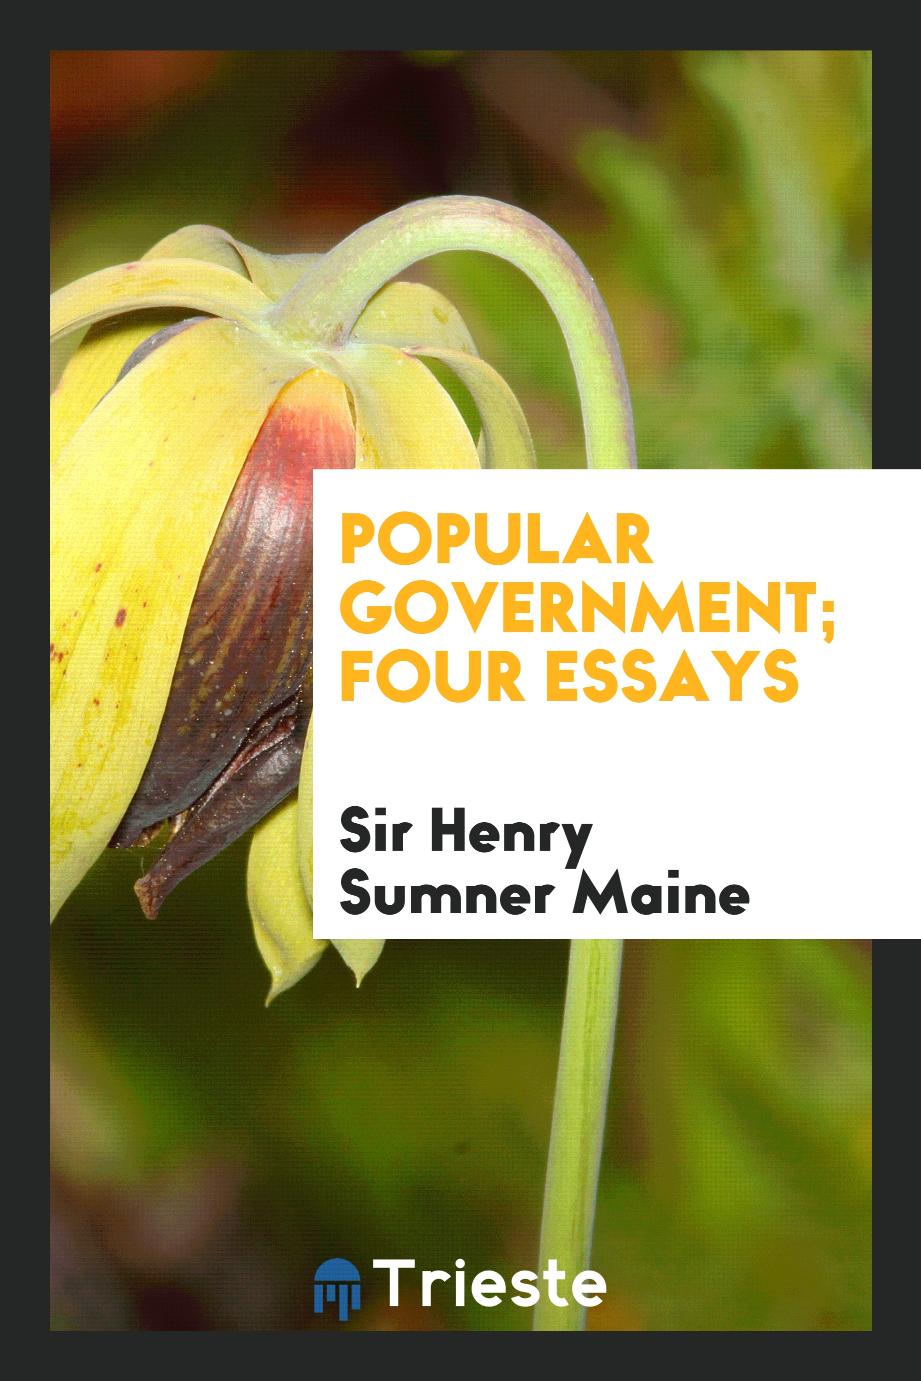 Popular government; four essays